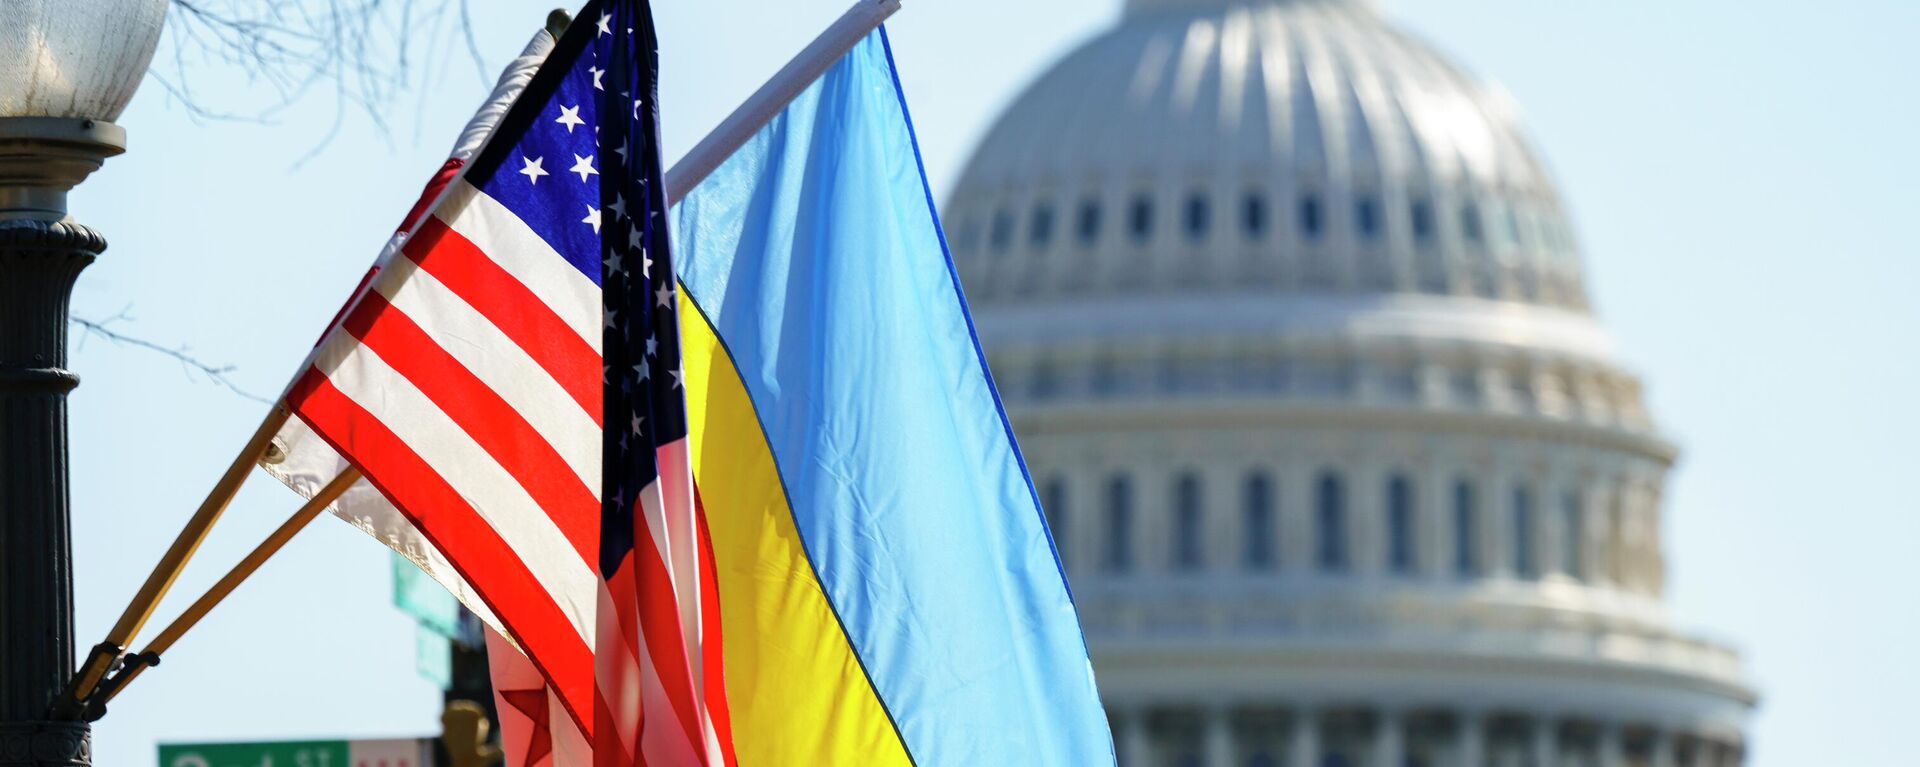 Cờ của Ukraina và Hoa Kỳ tại tòa nhà Capitol ở Washington - Sputnik Việt Nam, 1920, 20.11.2022